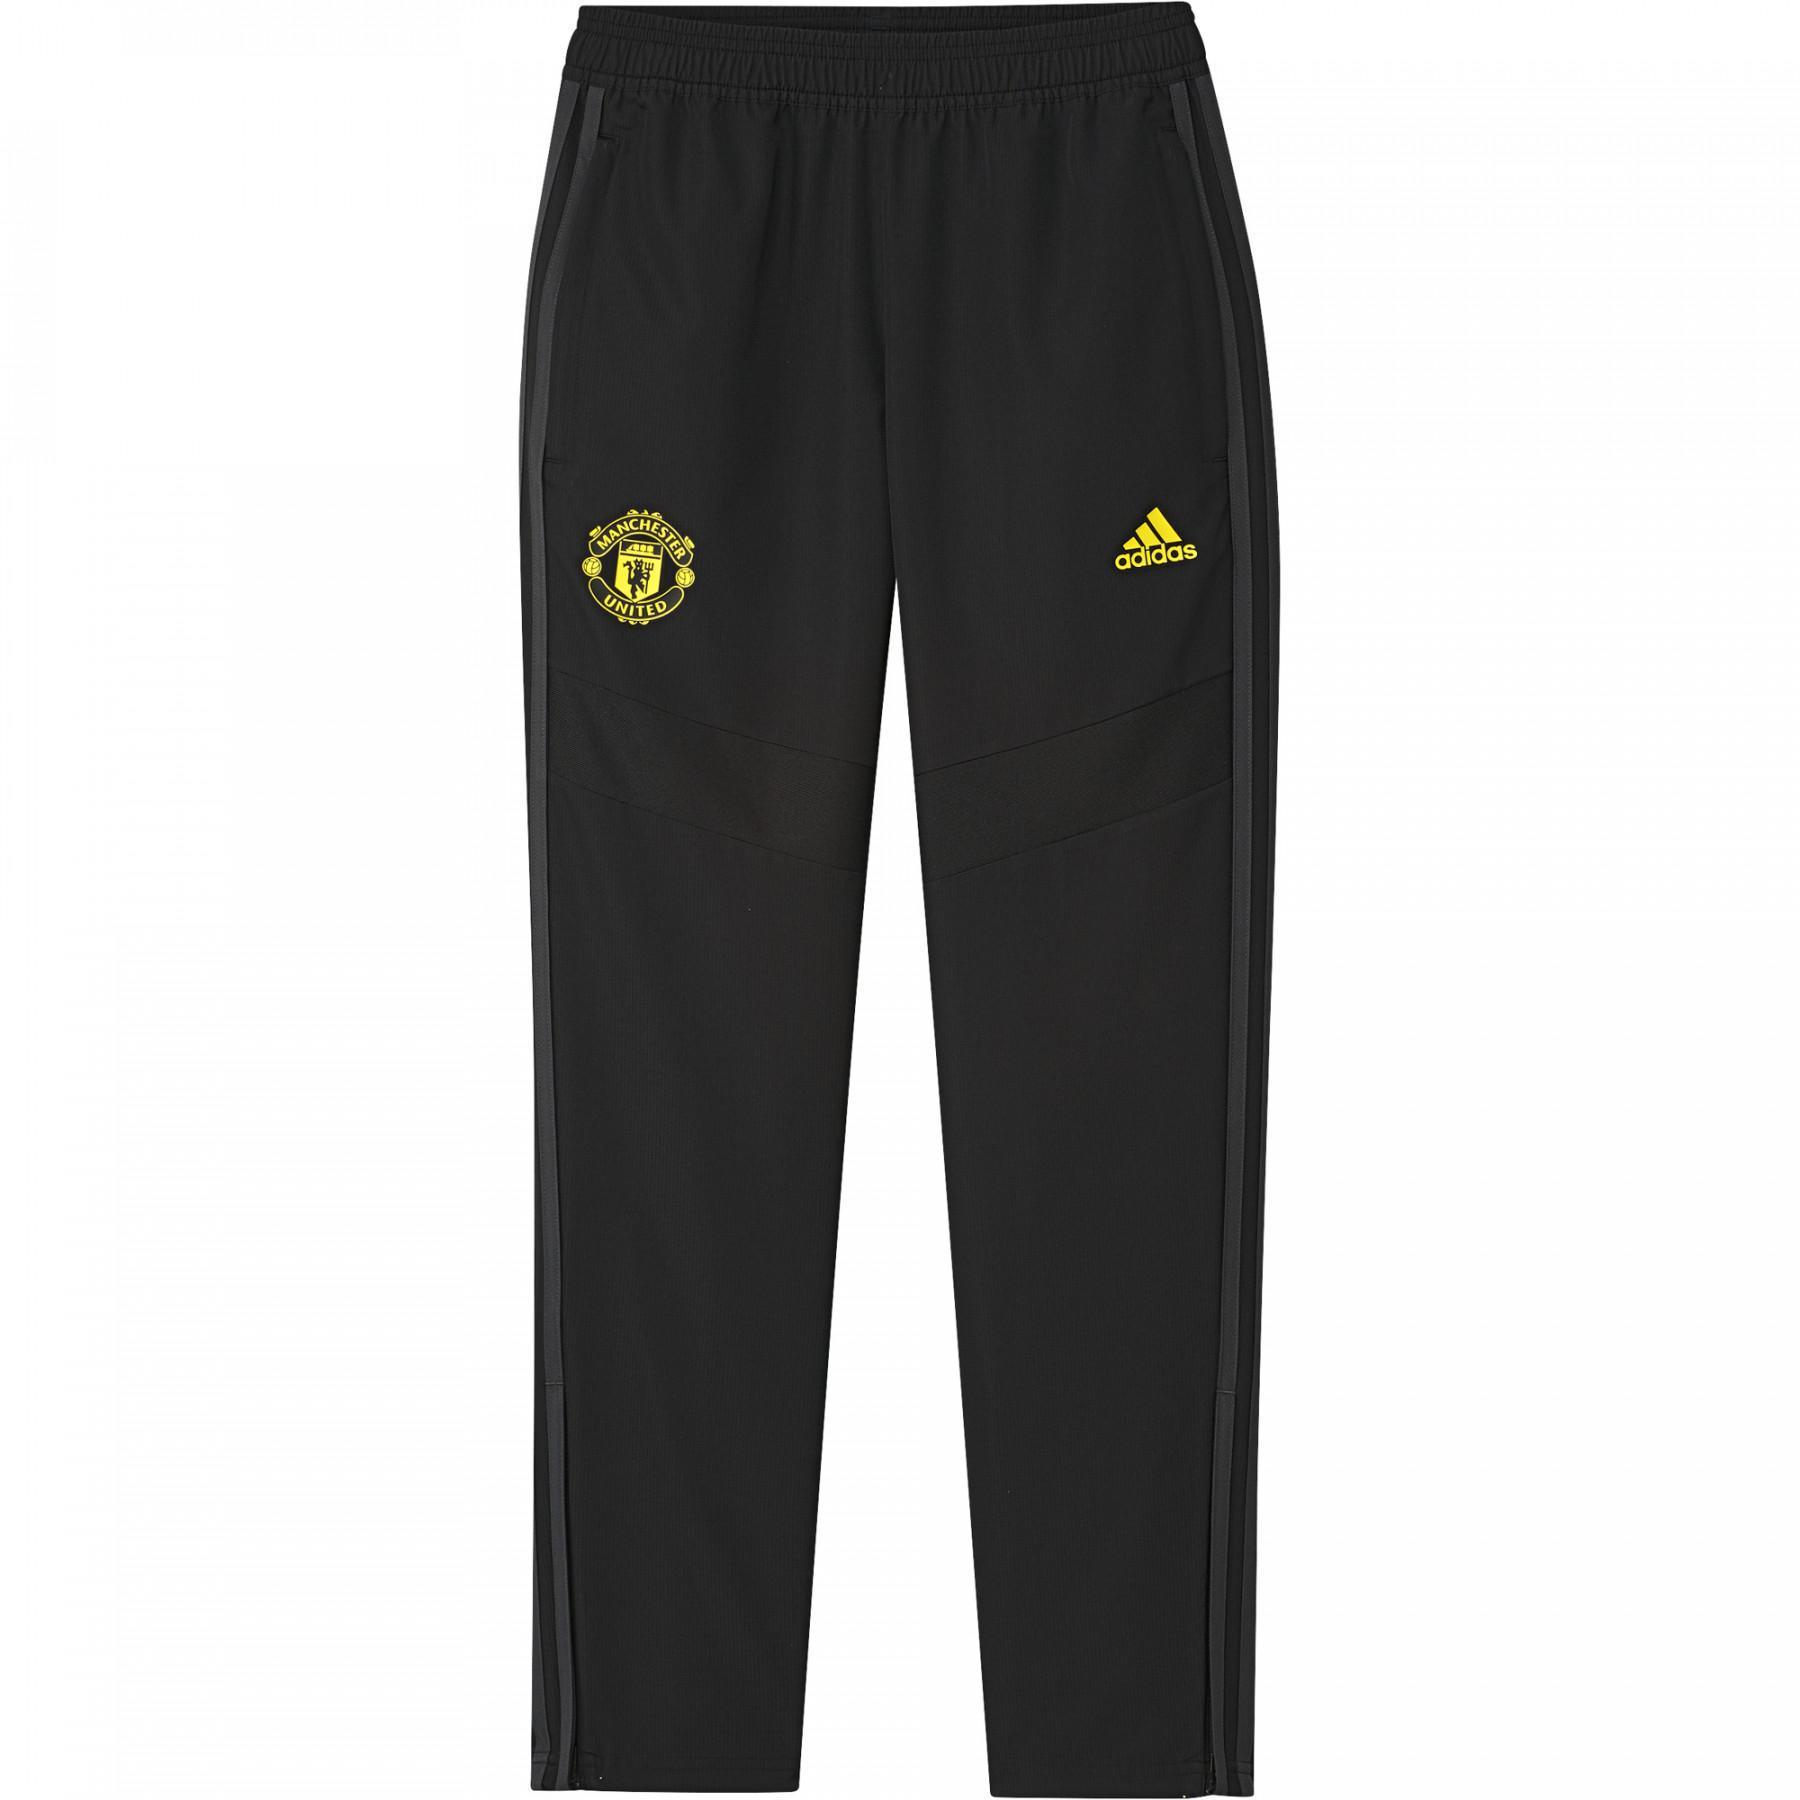 Spodnie dresowe dla dzieci Manchester United 2019/20